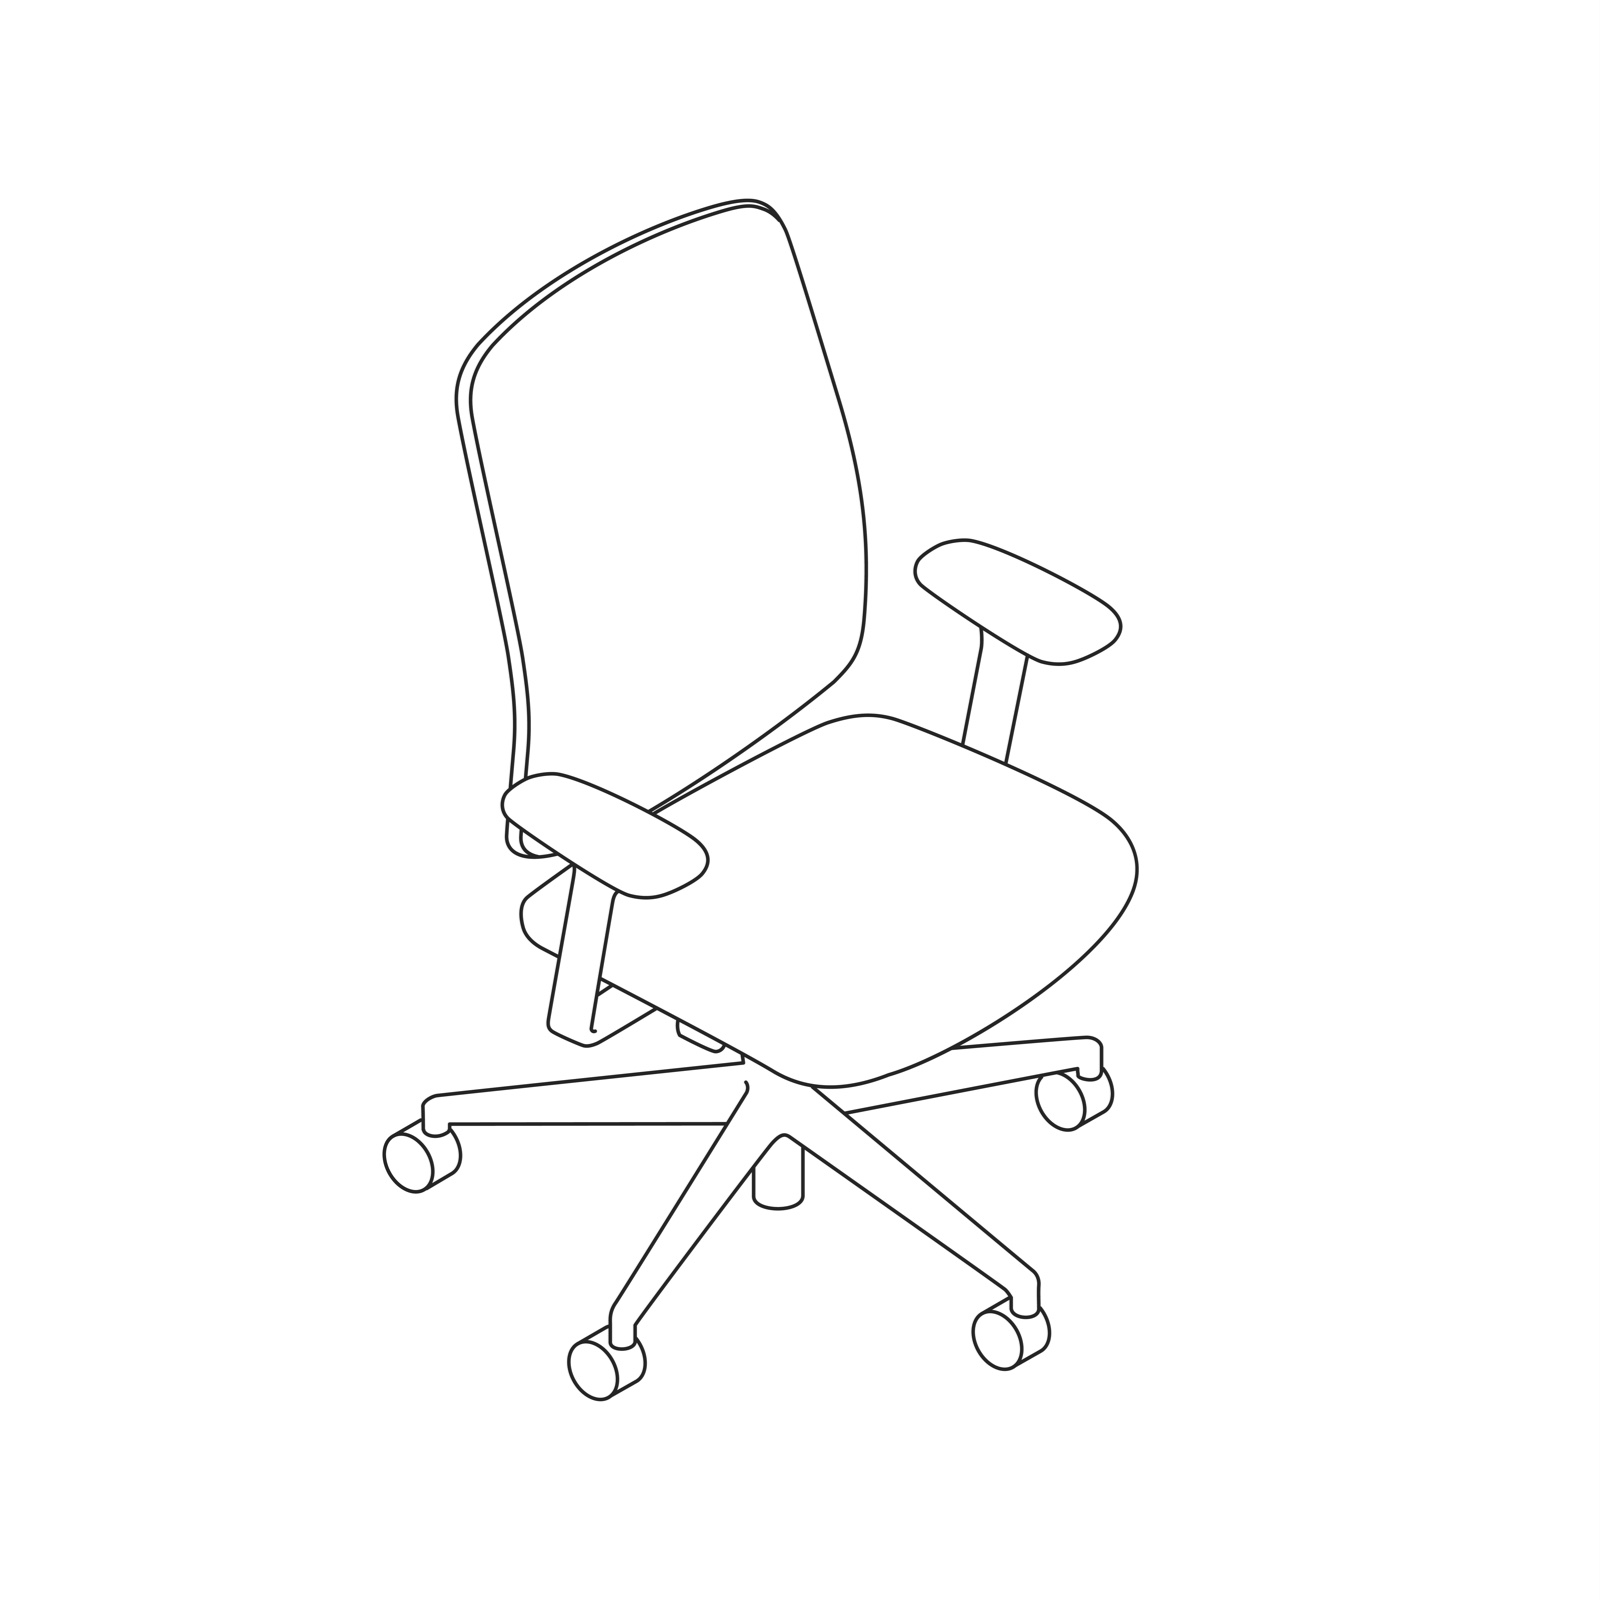 Verus座椅的线描图。